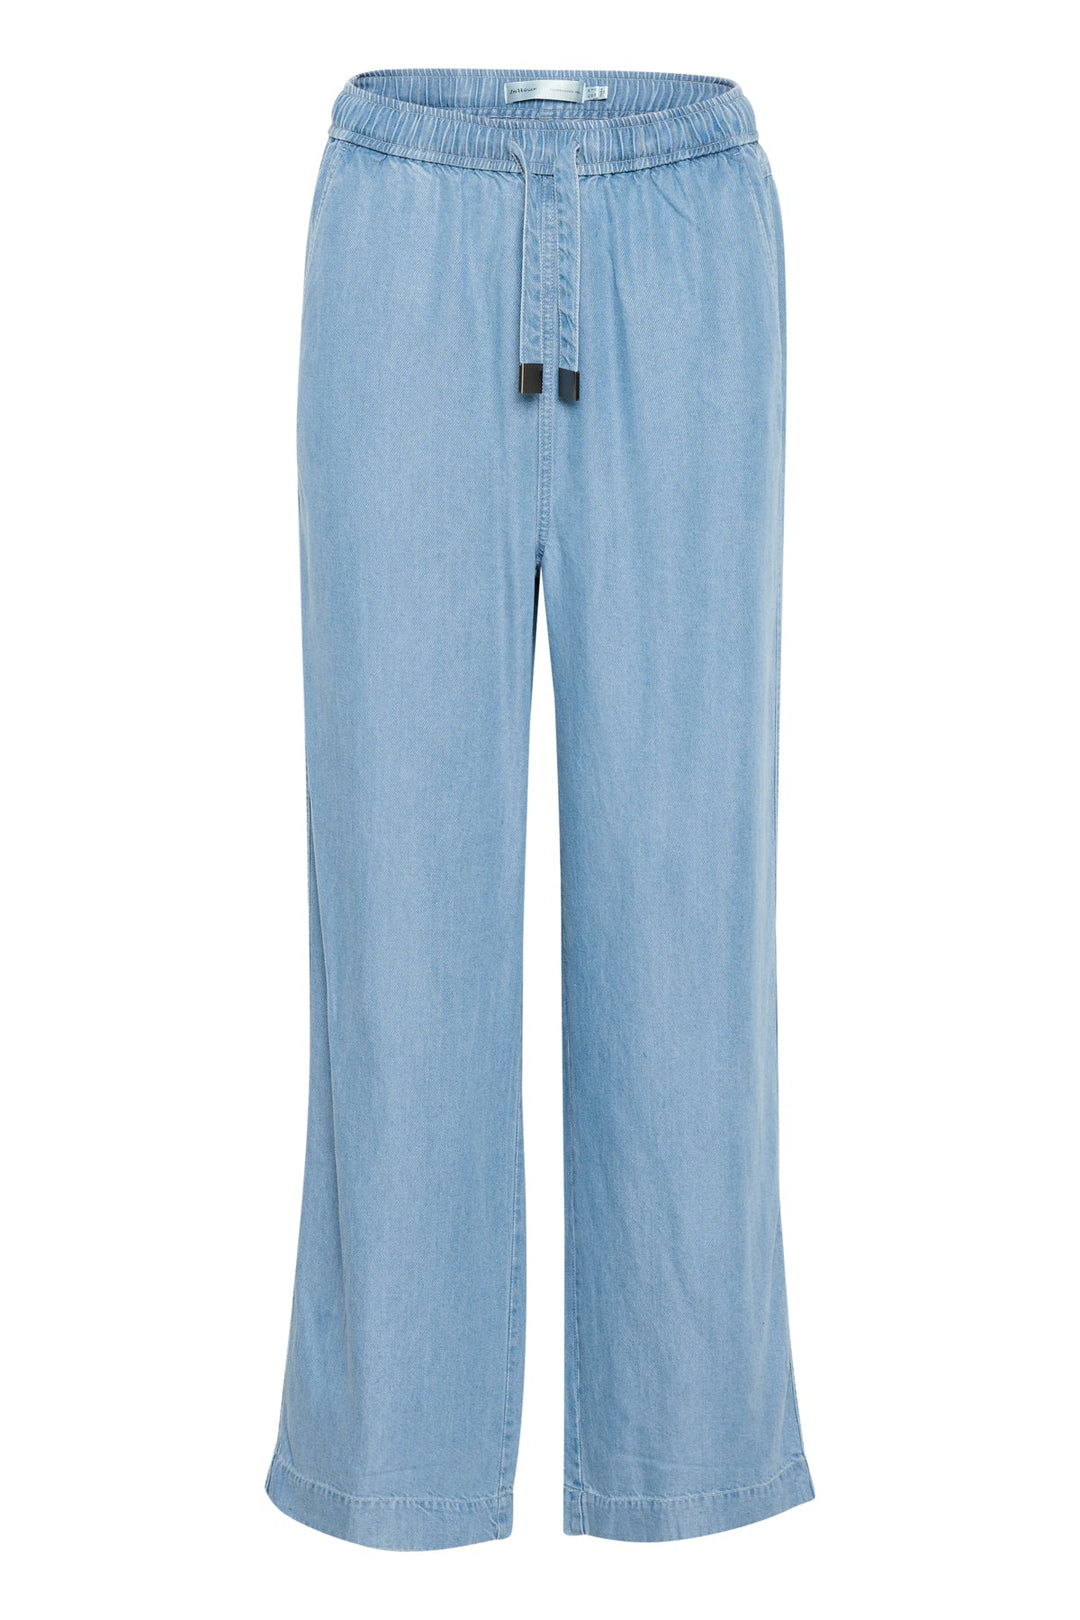 Philipaiw Pant Light Blue Denim | Bukser | Smuk - Dameklær på nett